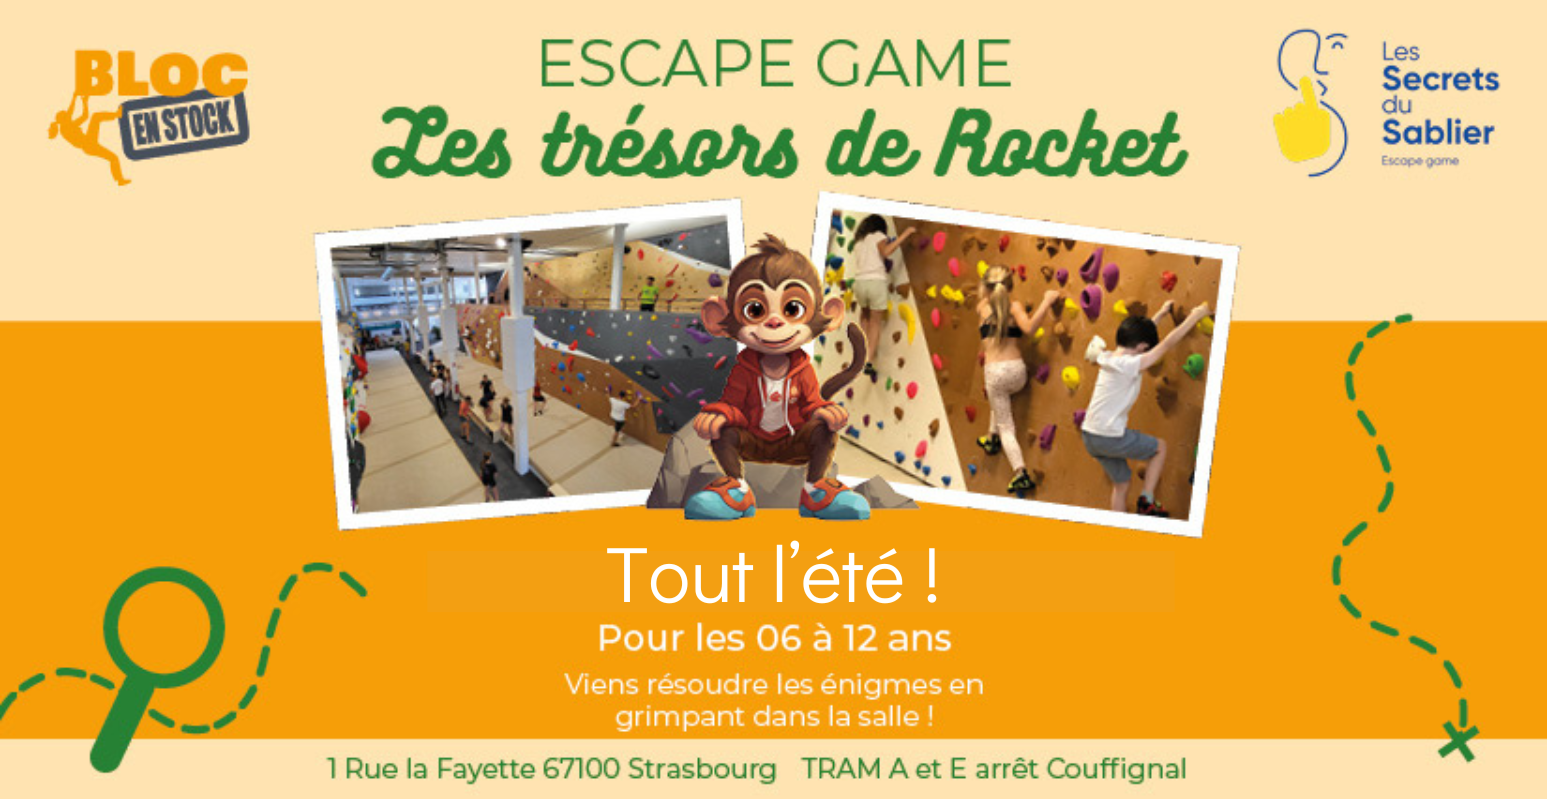  Escape Game pour enfant dans la salle d'escalade Bloc en Stock à Strasbourg